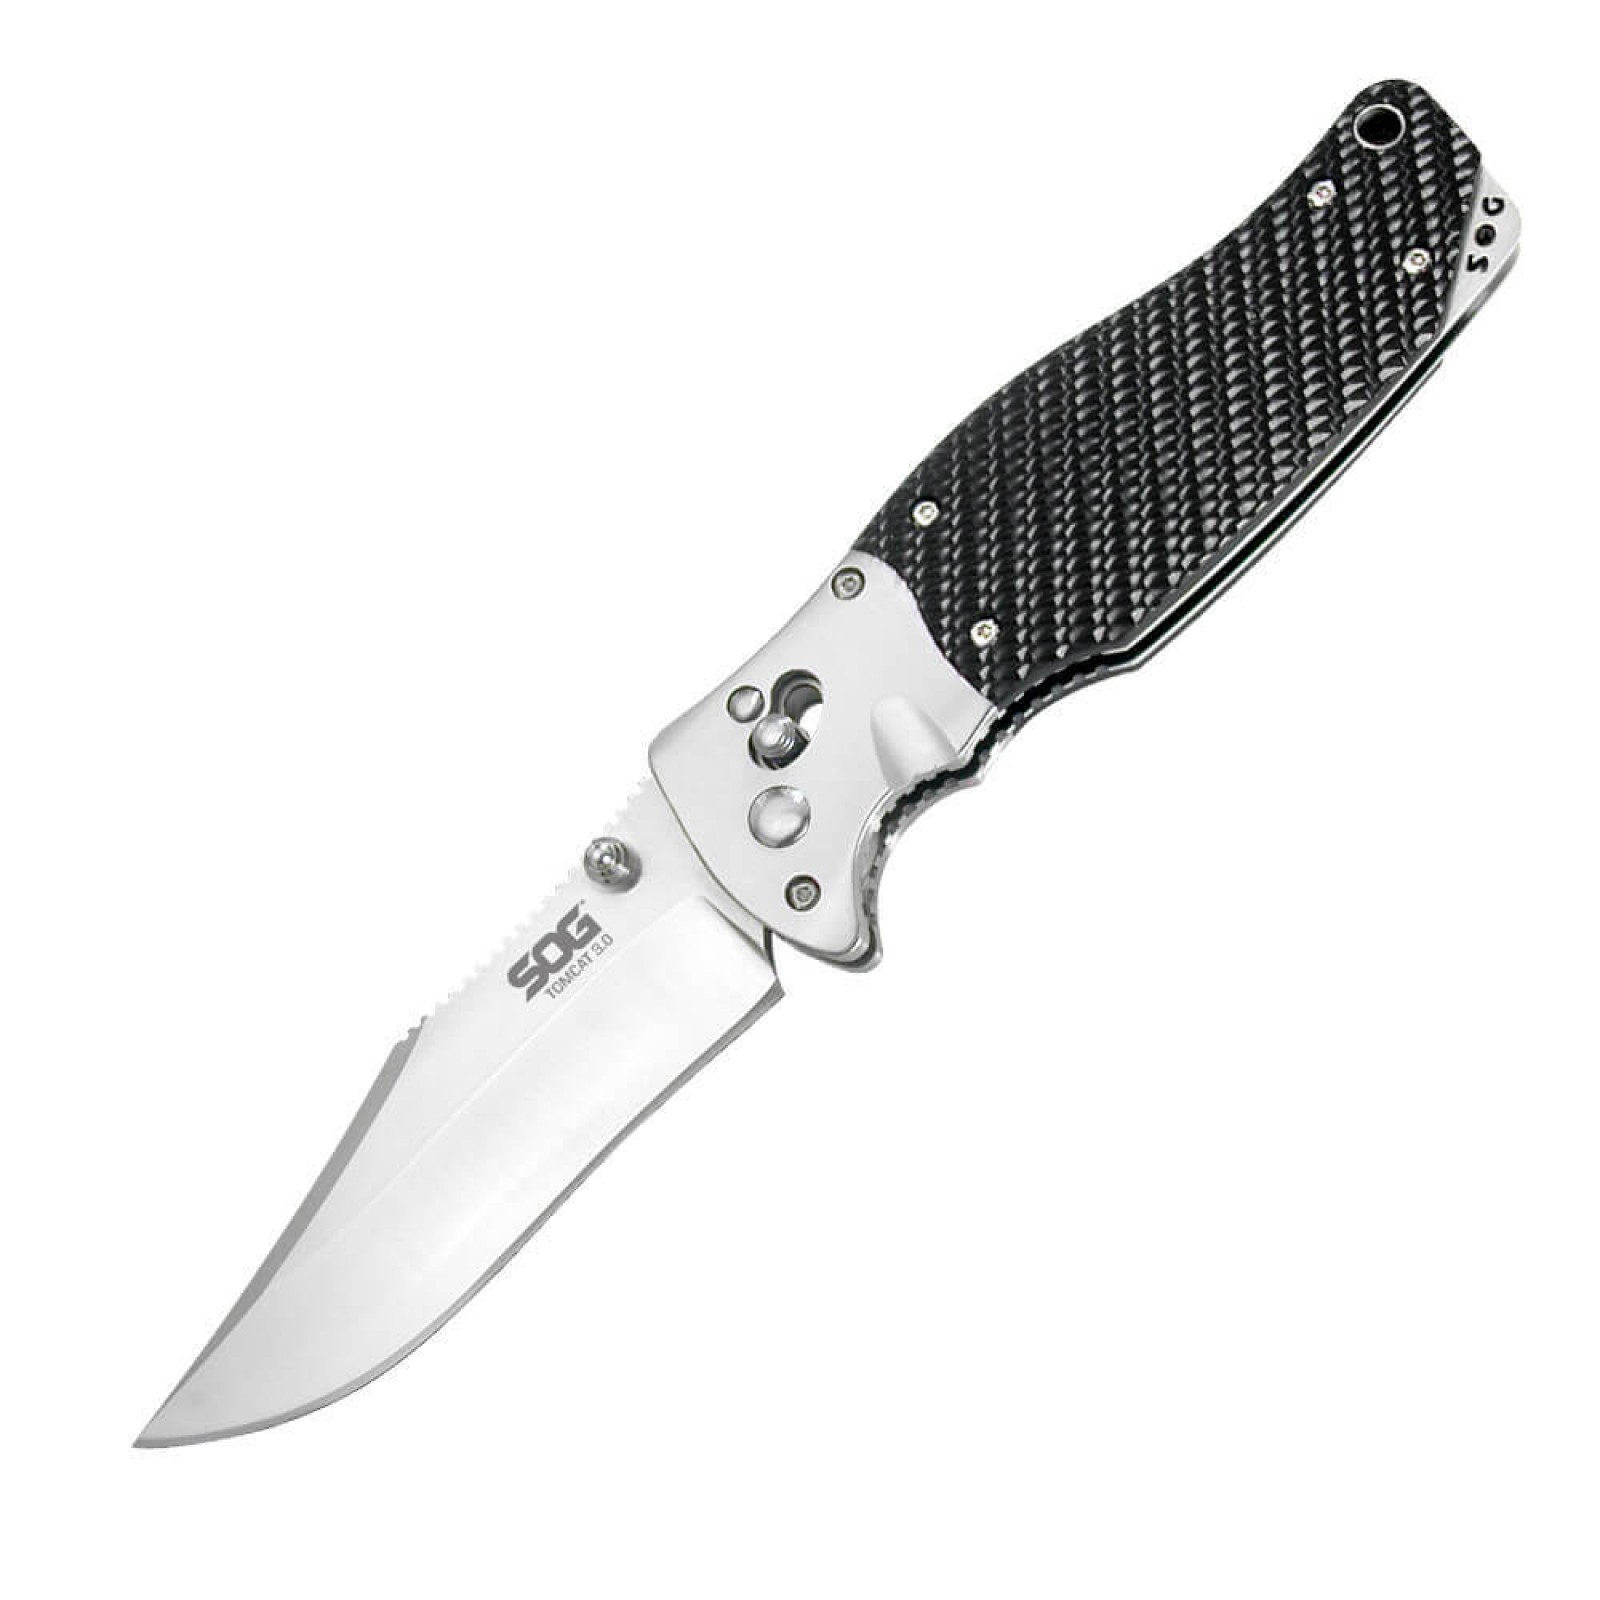 Складной нож Tomcat 3.0 - SOG S95, сталь VG-10, рукоять кратон - фото 1